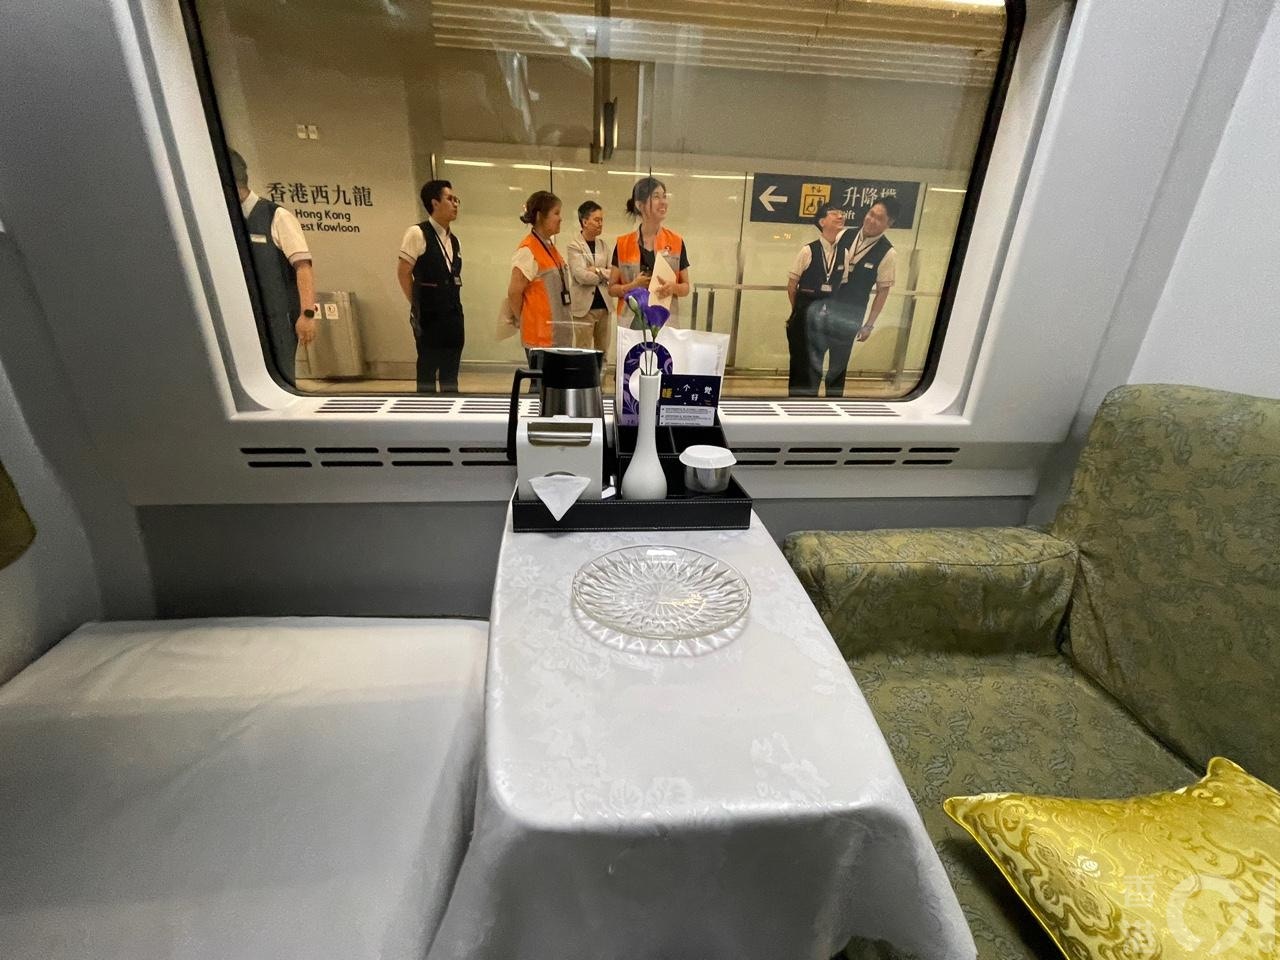 来往香港至上海的高铁通宵卧铺列车6月15日晚启航。列车特点是特设高级卧铺床位，票价每位高达2,128元。房间内有一枱，放了热水壶及小食牒，下方有一个垃圾筒。(潘耀升摄)